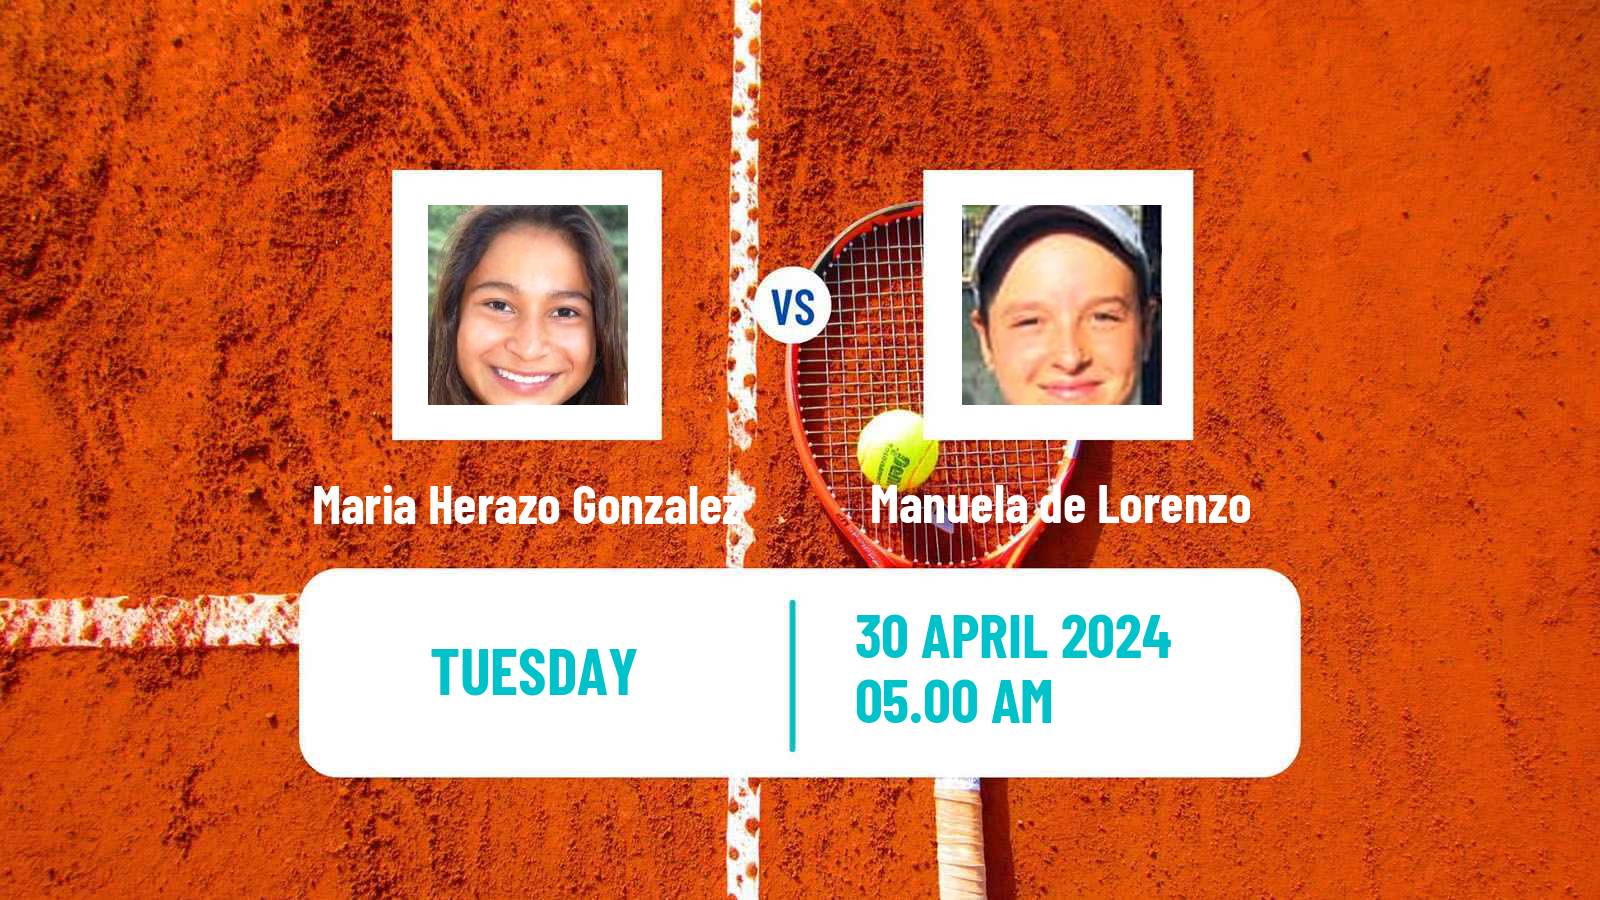 Tennis ITF W35 Hammamet 7 Women Maria Herazo Gonzalez - Manuela de Lorenzo